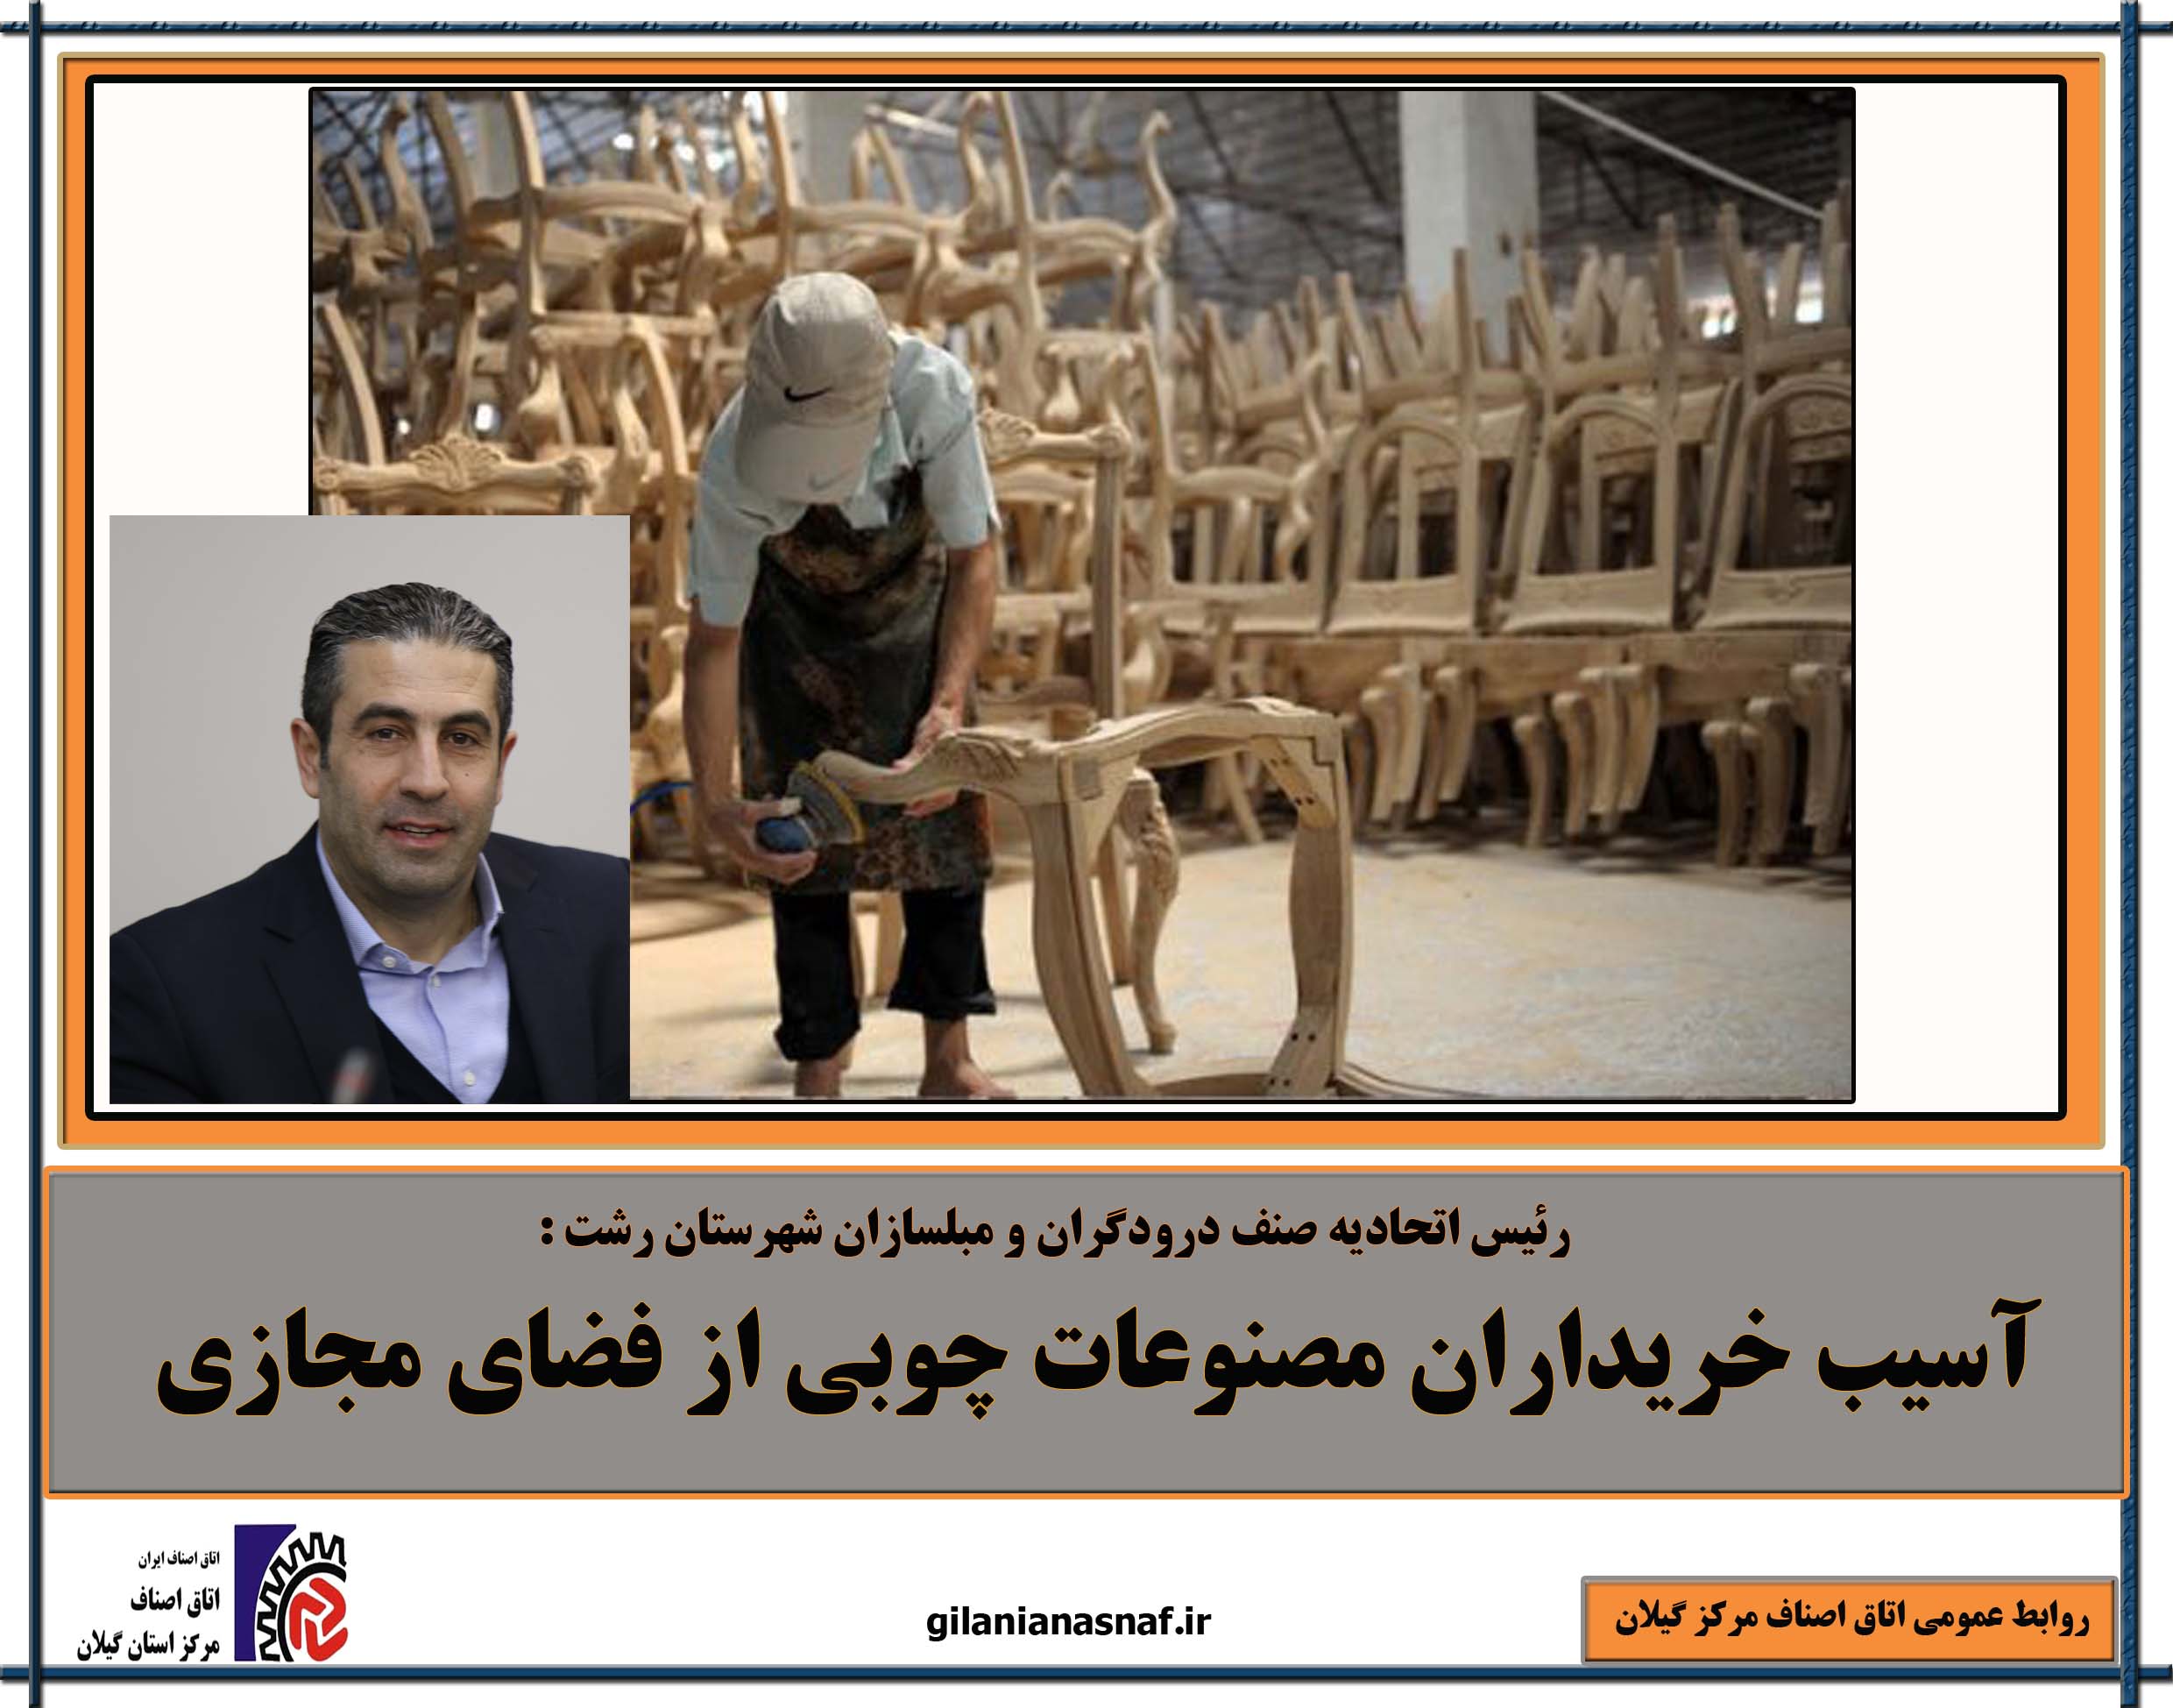 رئیس اتحادیه صنف درودگران و مبلسازان شهرستان رشت : آسیب خریداران مصنوعات چوبی از فضای مجازی